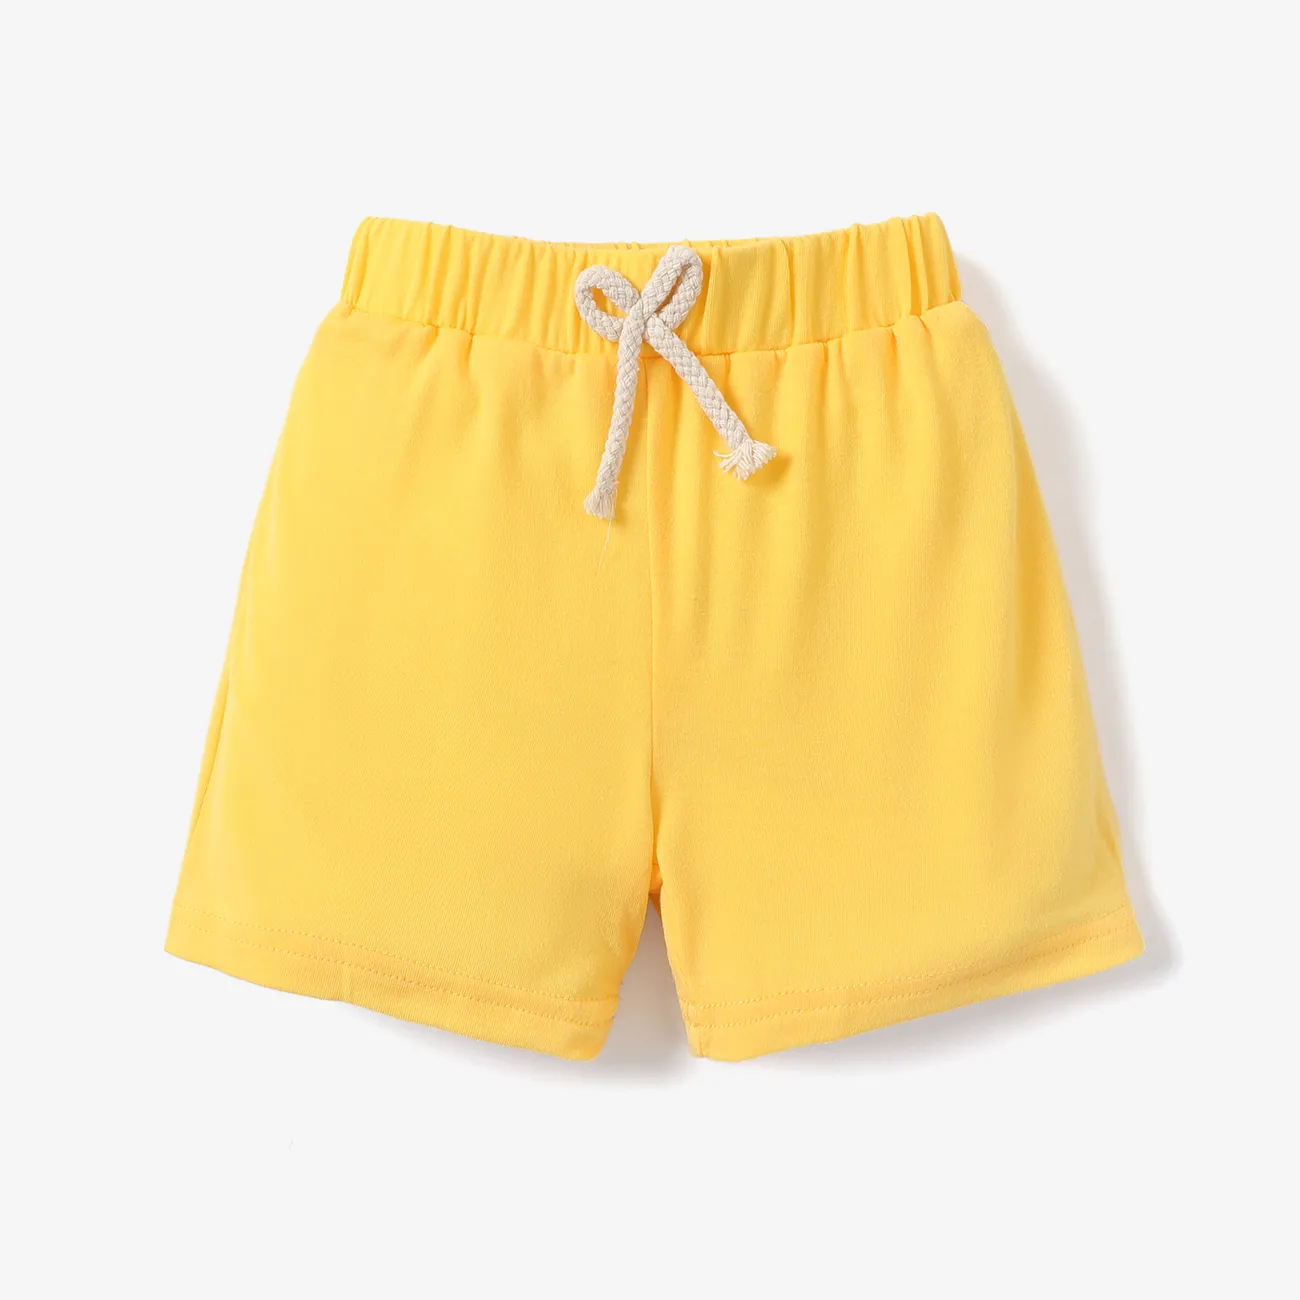 Niño pequeño Unisex Básico Pantalones cortos Amarillo big image 1